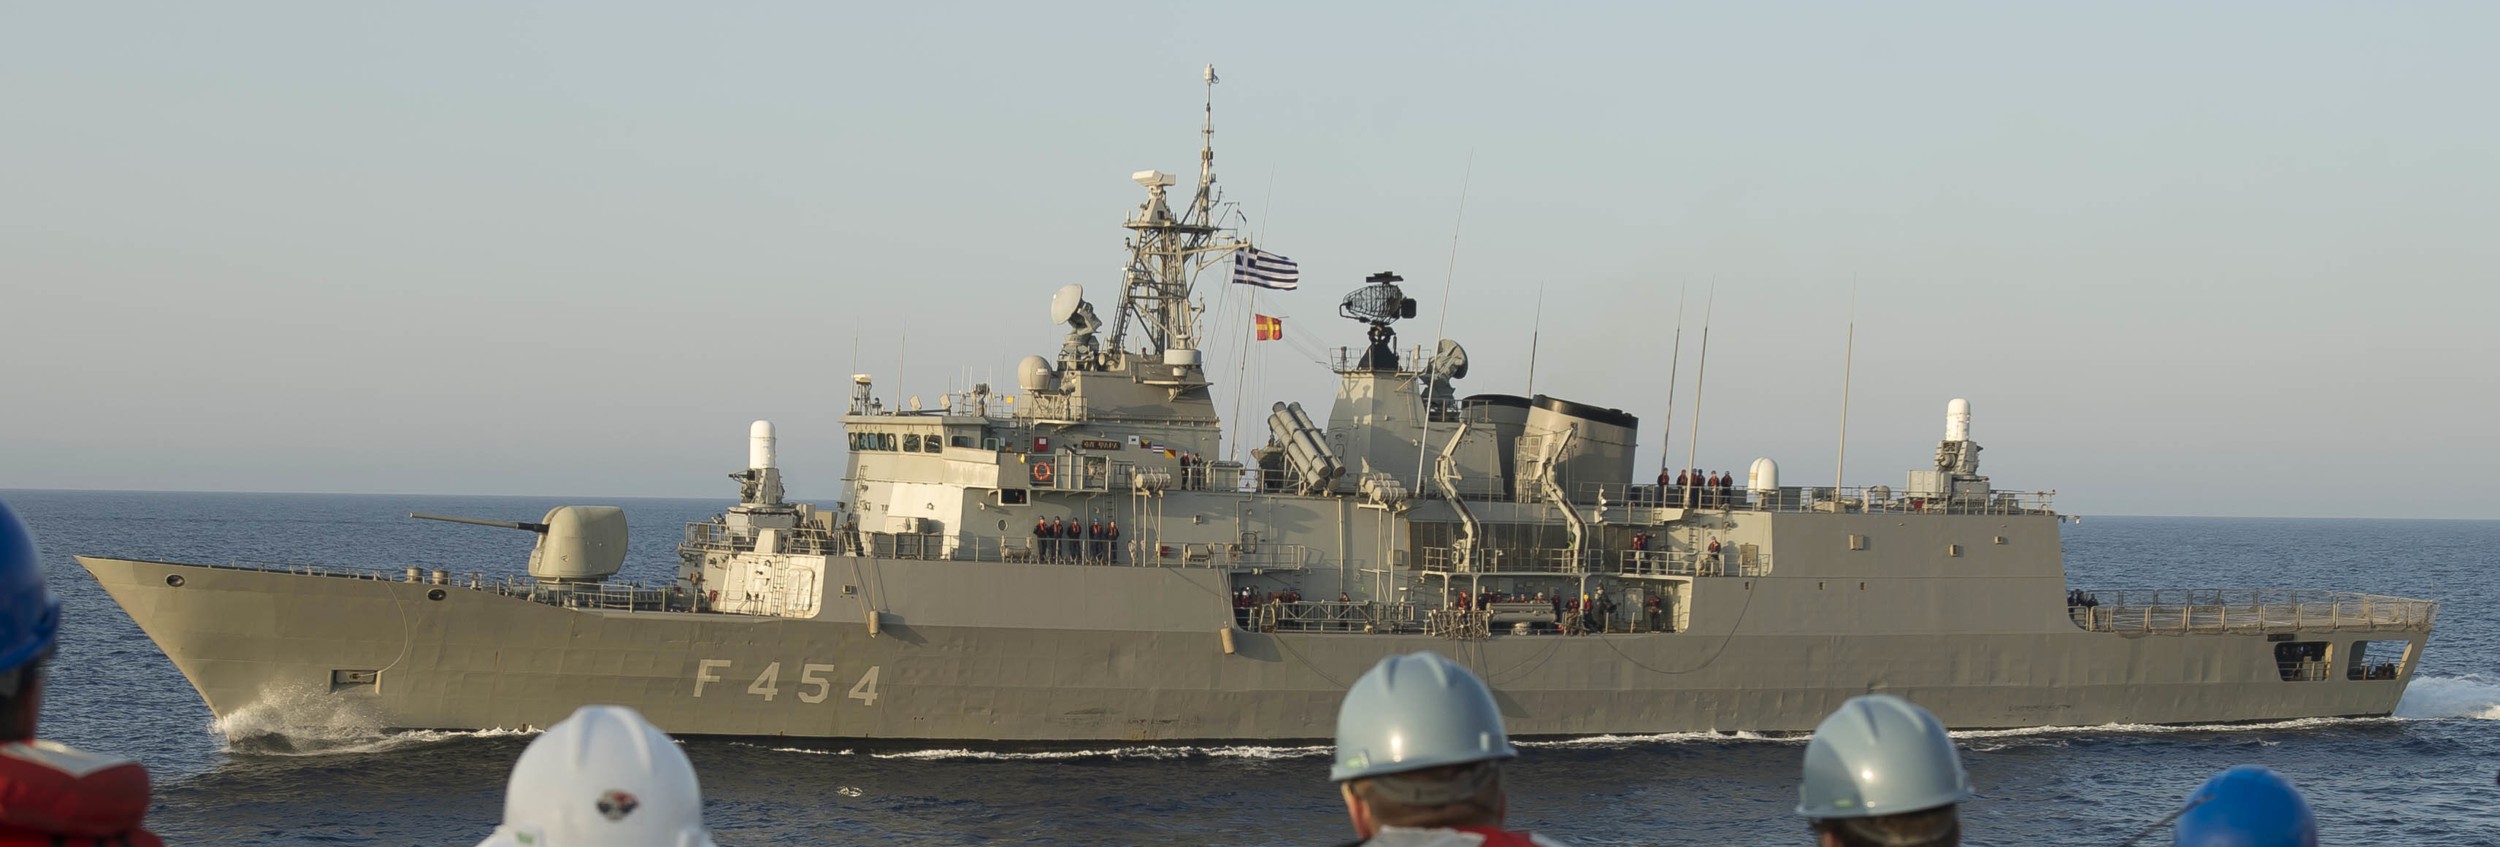 f 454 hs psara hydra class frigate meko-200hn hellenic navy greece 12